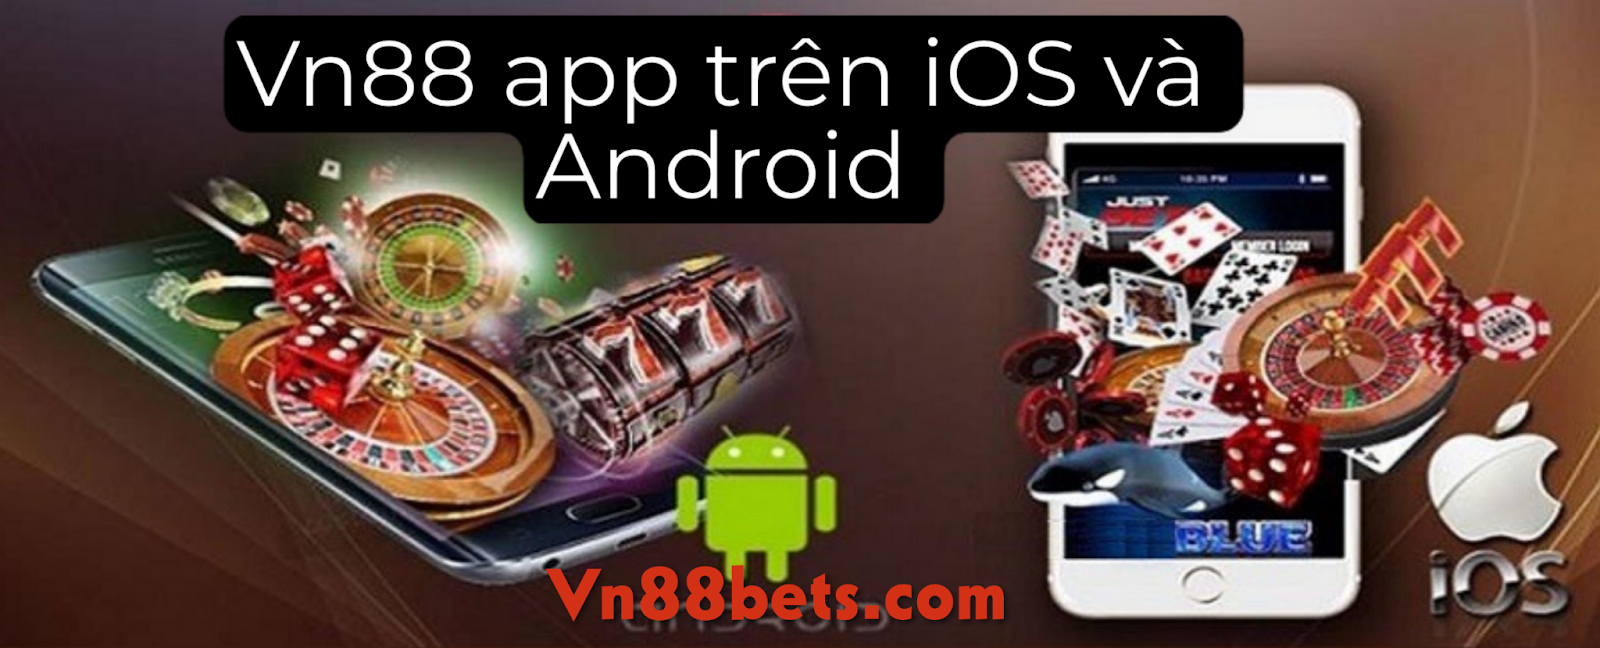 Ứng dụng Vn88 cho 2 hệ điều hành iOS và Android